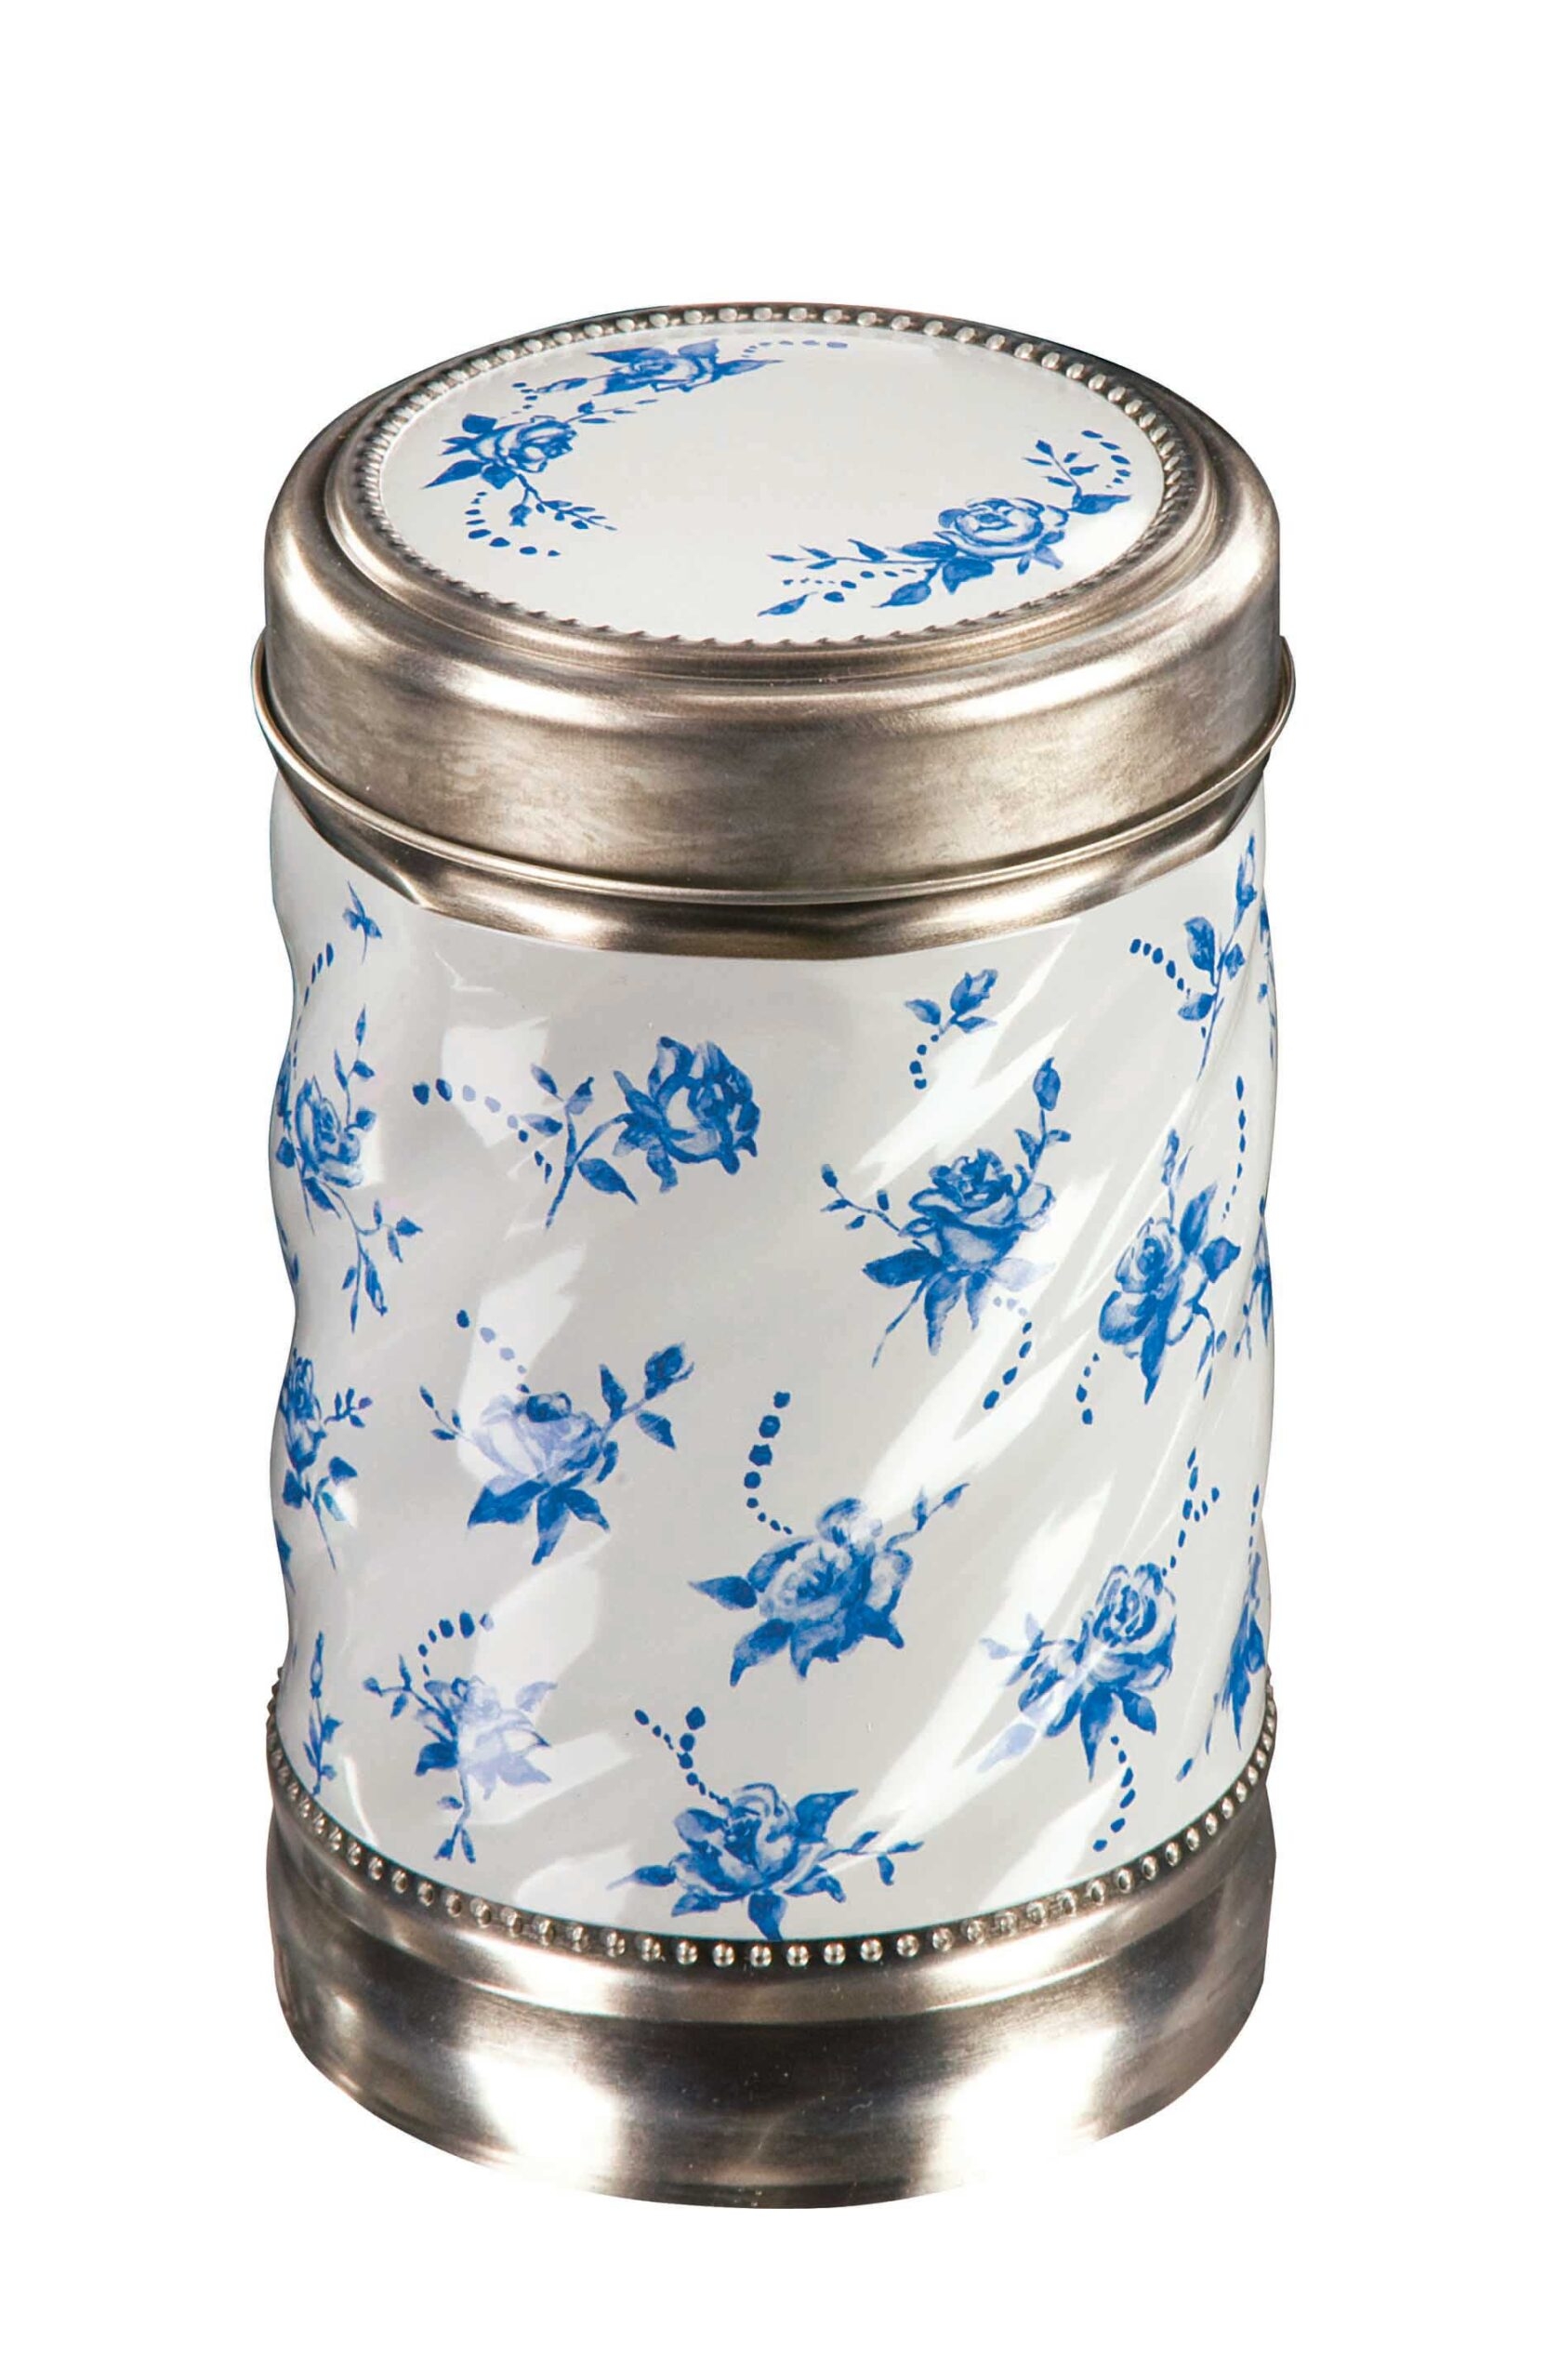 Porcelain Small Jar – 200g Vanilla Fudge – Churchills Confectionary